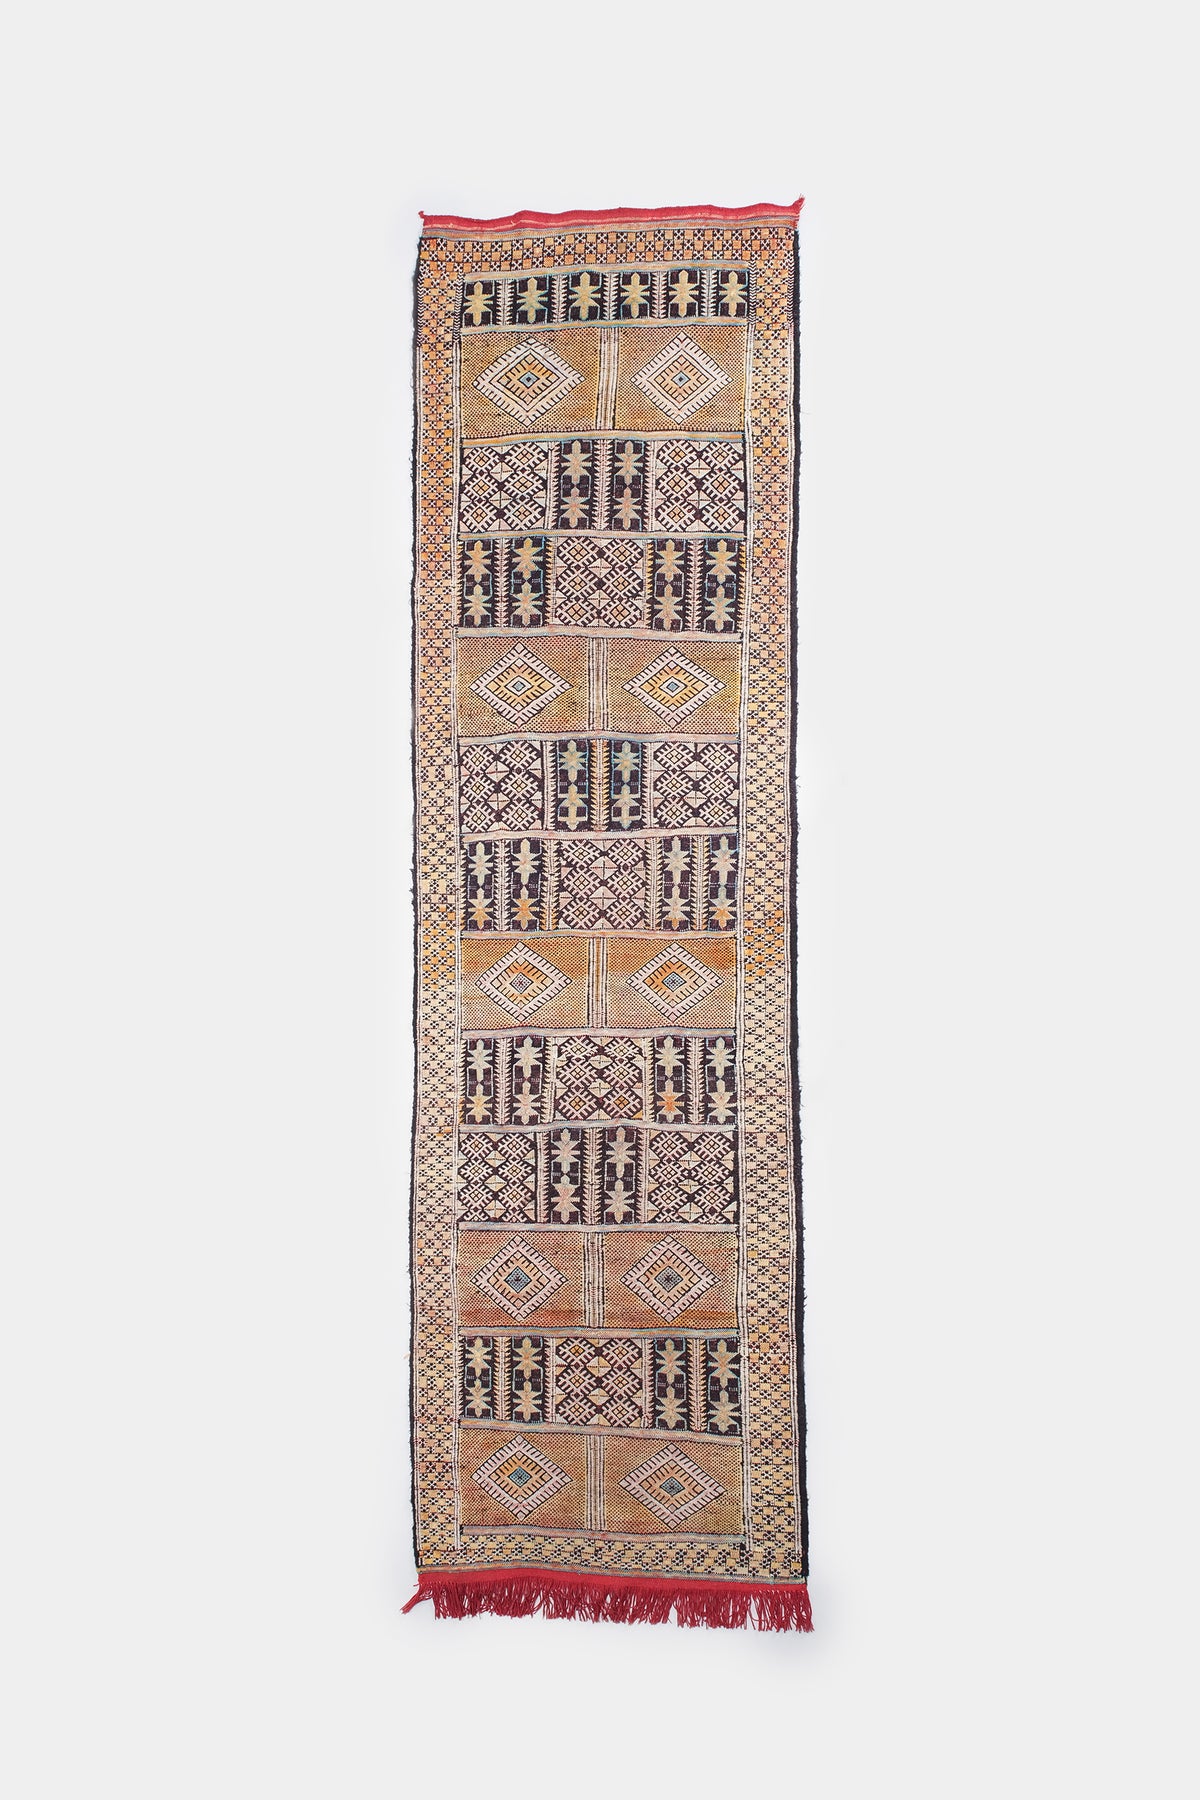 Carpet, Antique, Tunisia, Around 1900